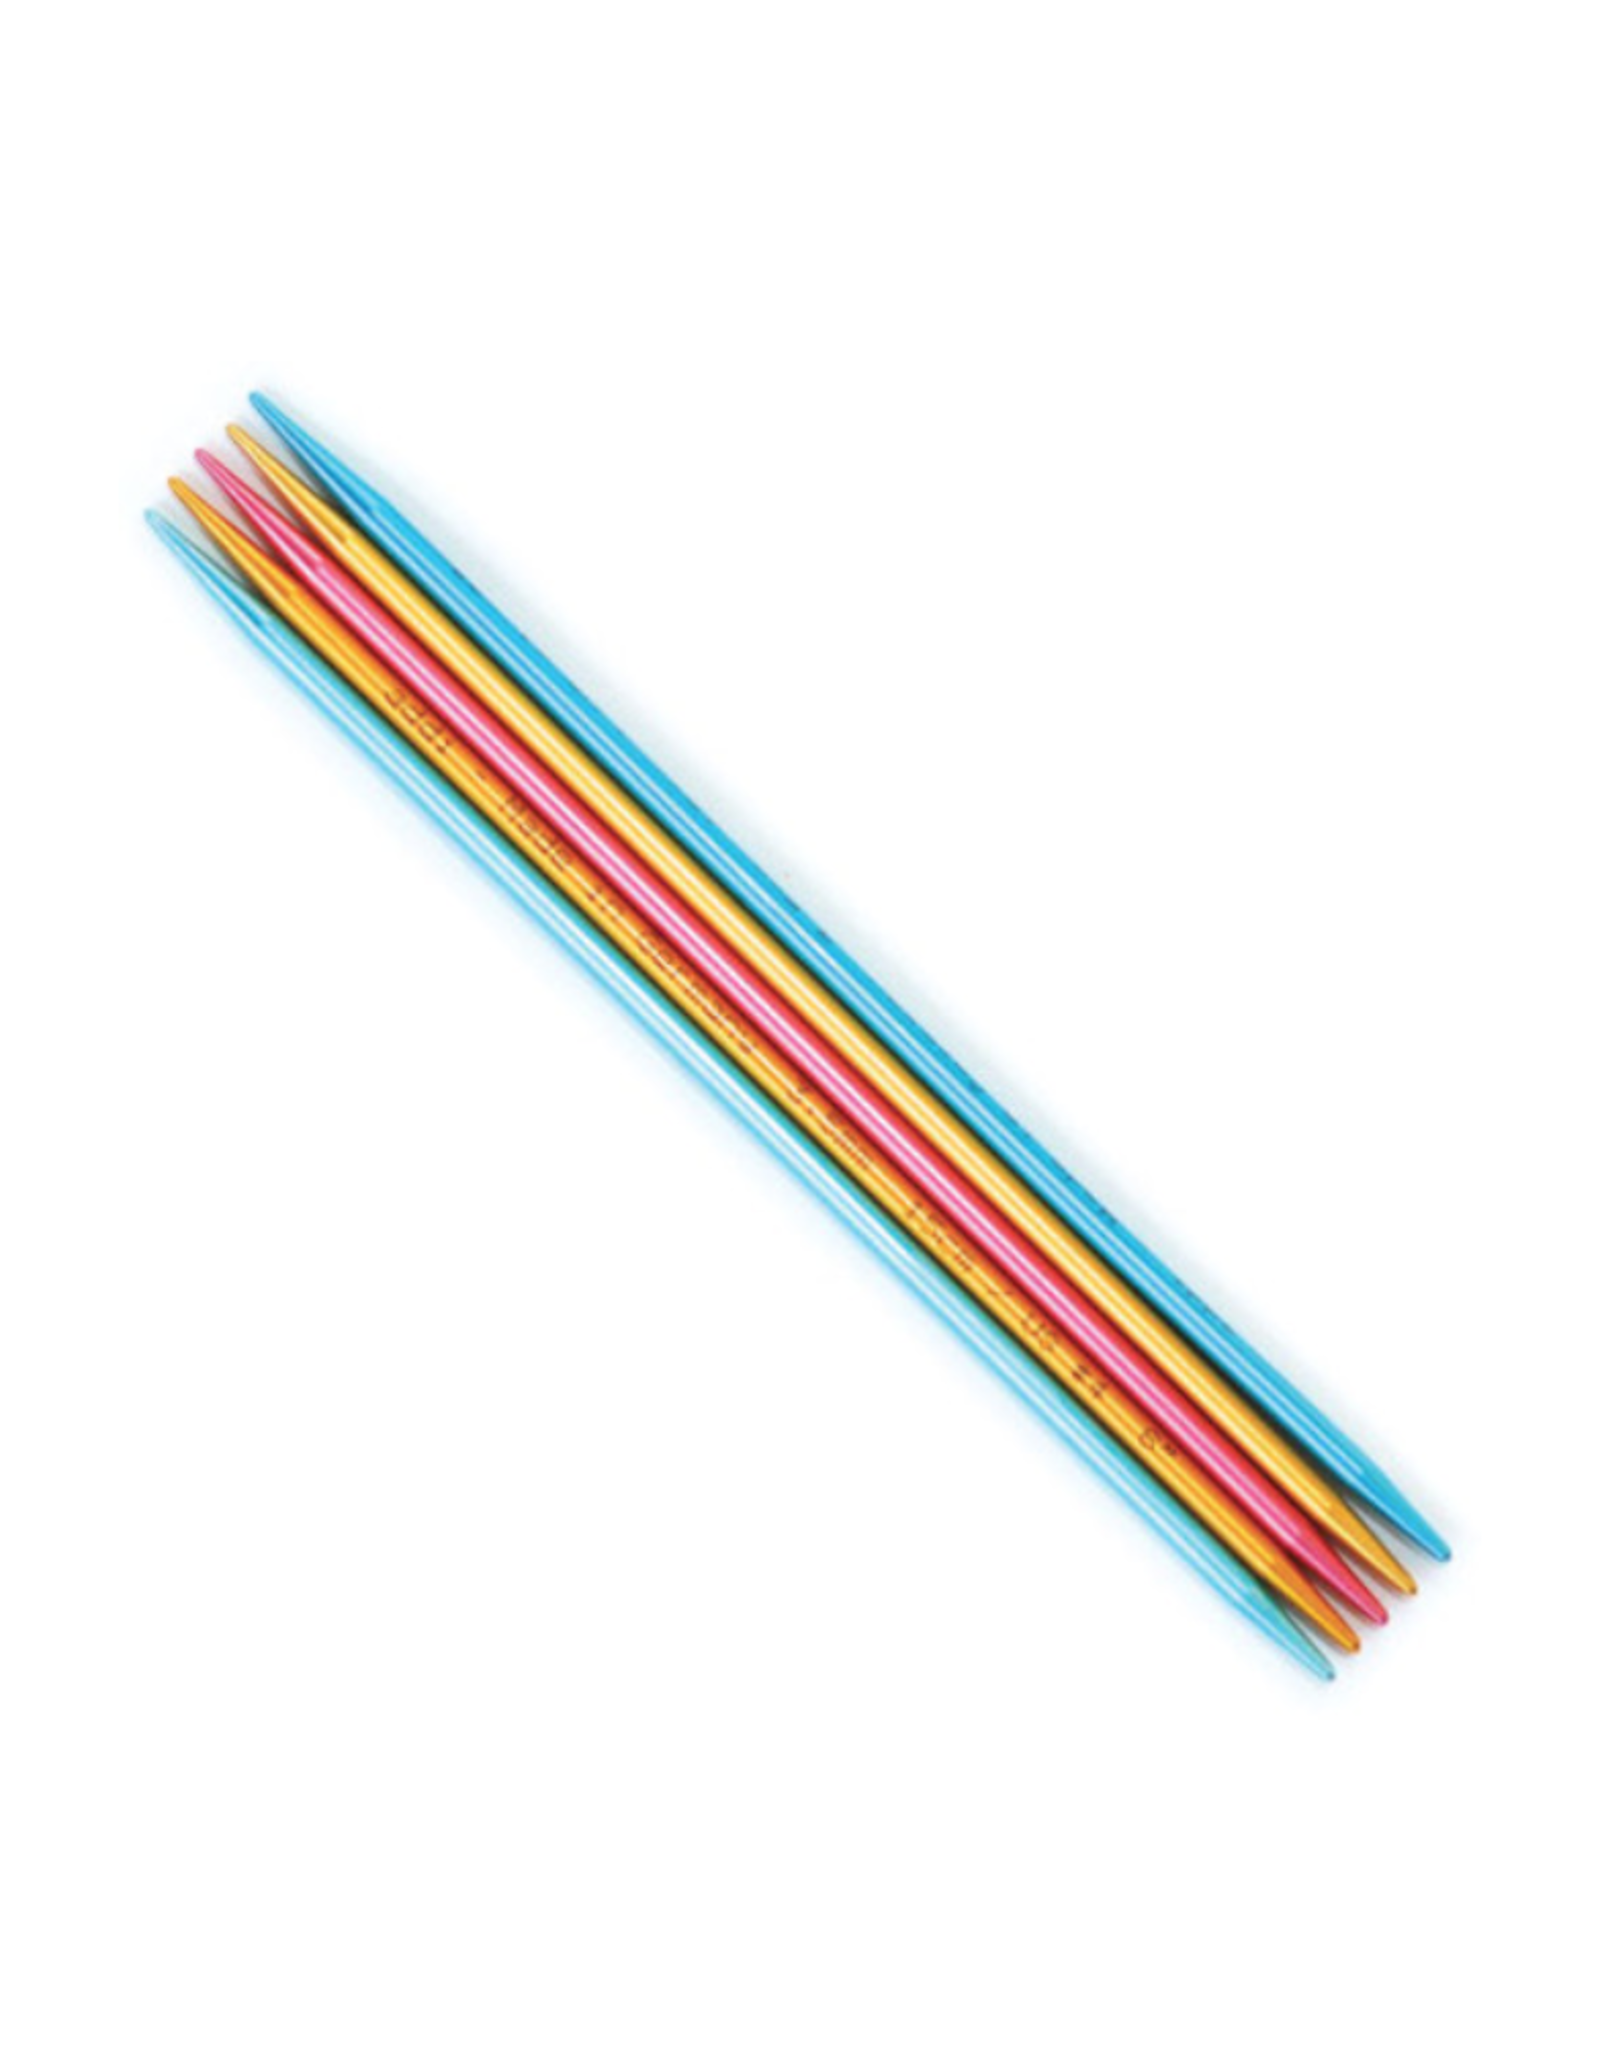 Addi Flipstix 6" long double pointed needle, size US 10